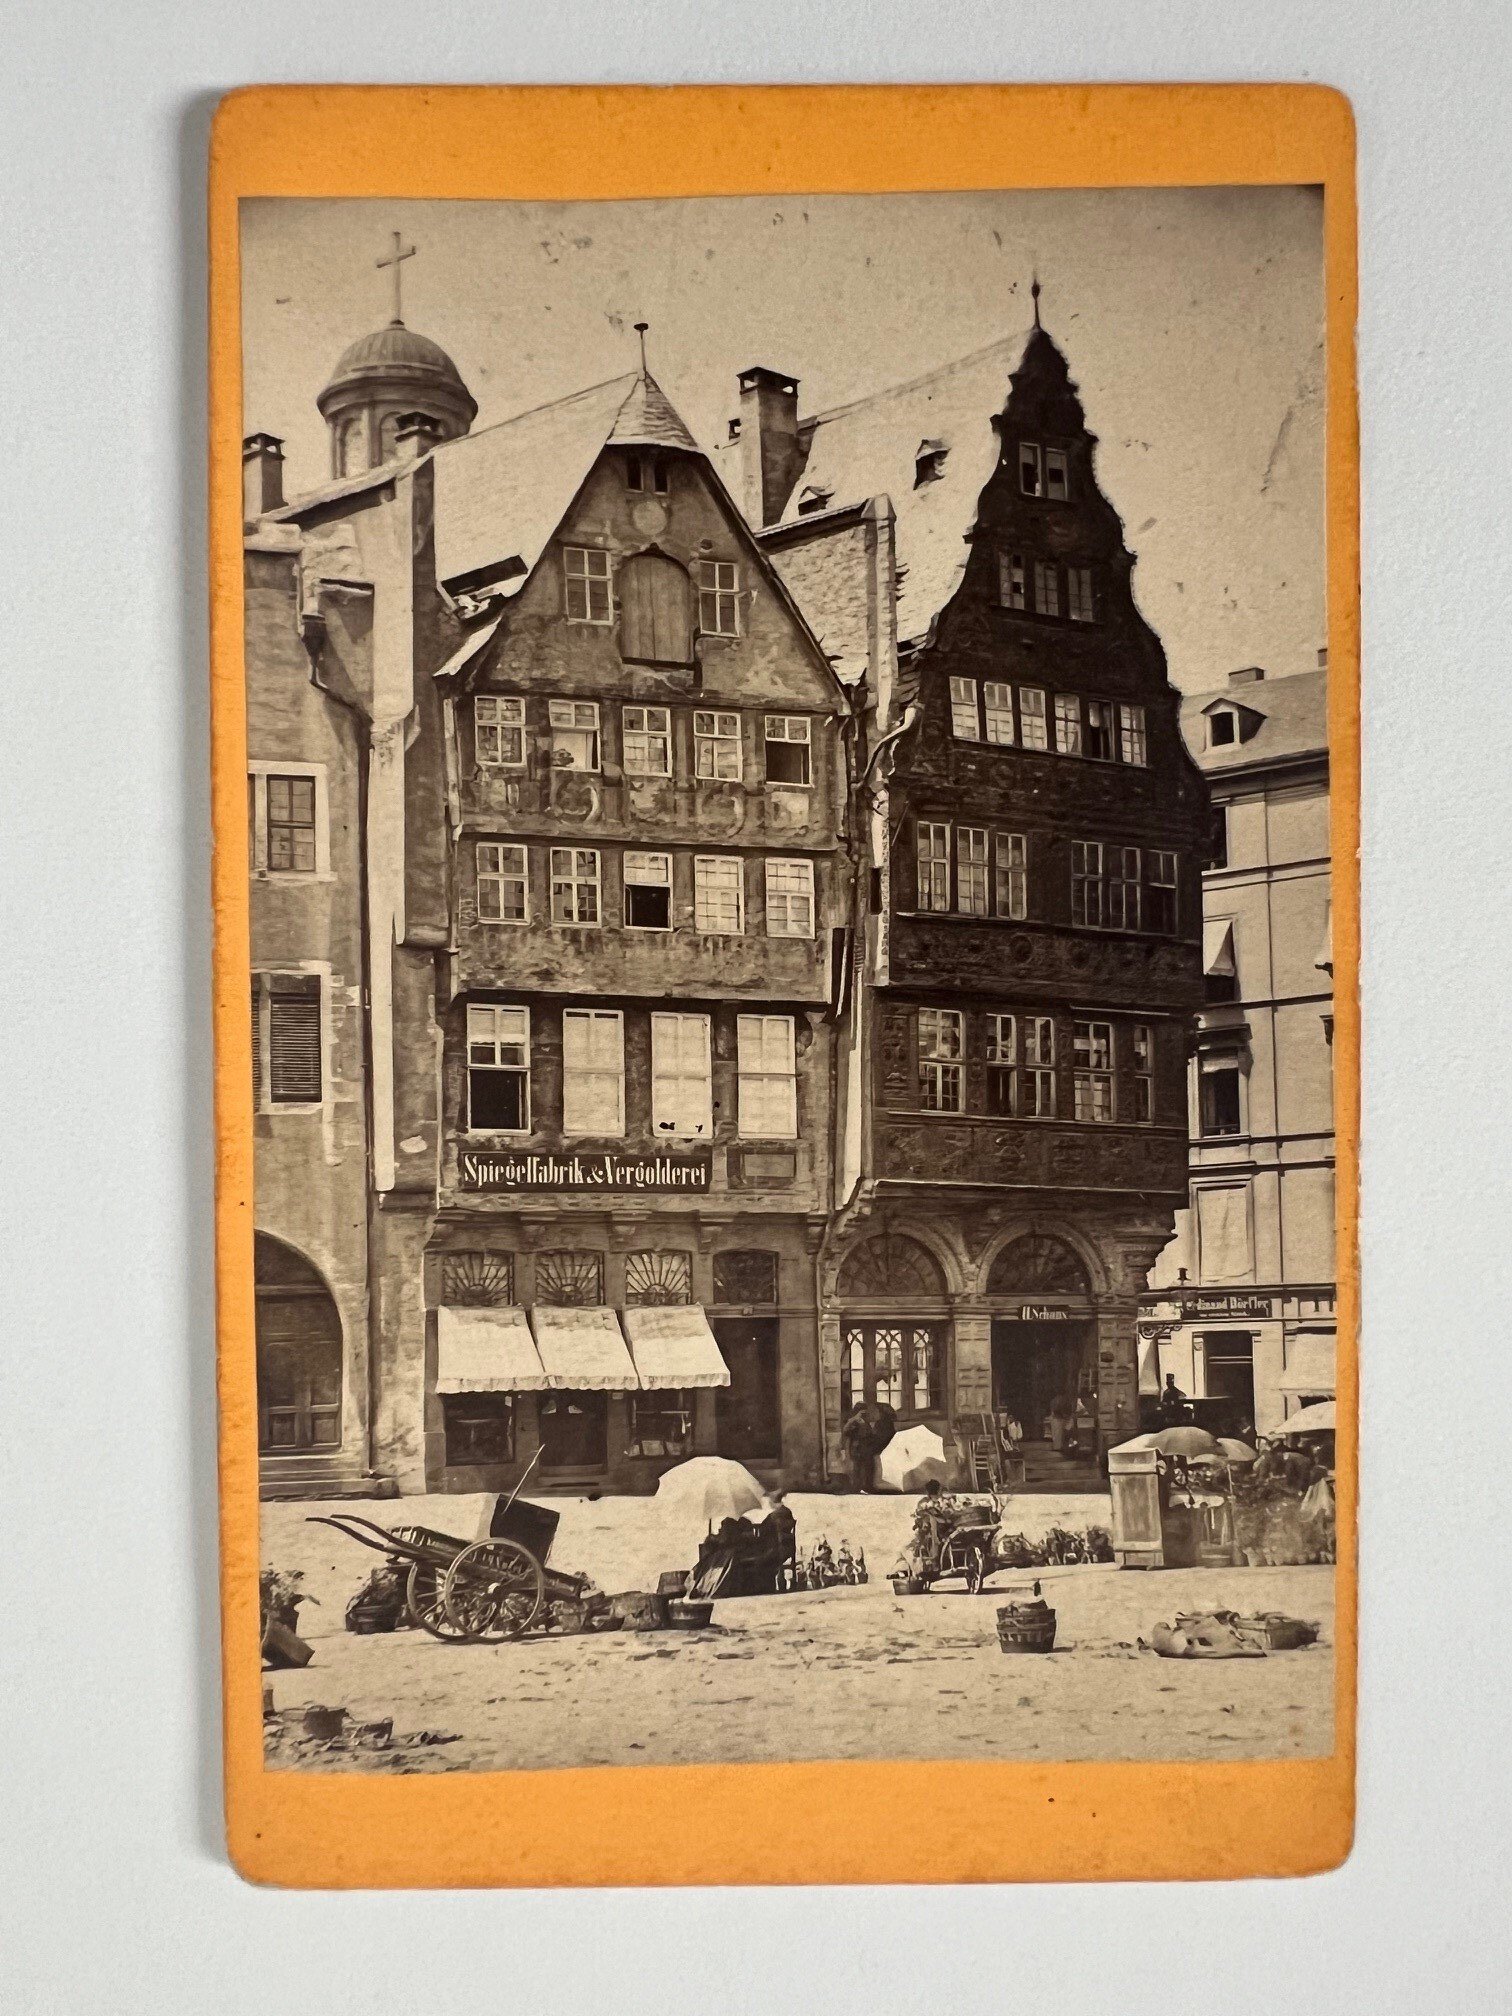 CdV, Theodor Creifelds, Frankfurt, Nr. 275 Alte Häuser beim Römer, ca. 1872. (Taunus-Rhein-Main - Regionalgeschichtliche Sammlung Dr. Stefan Naas CC BY-NC-SA)